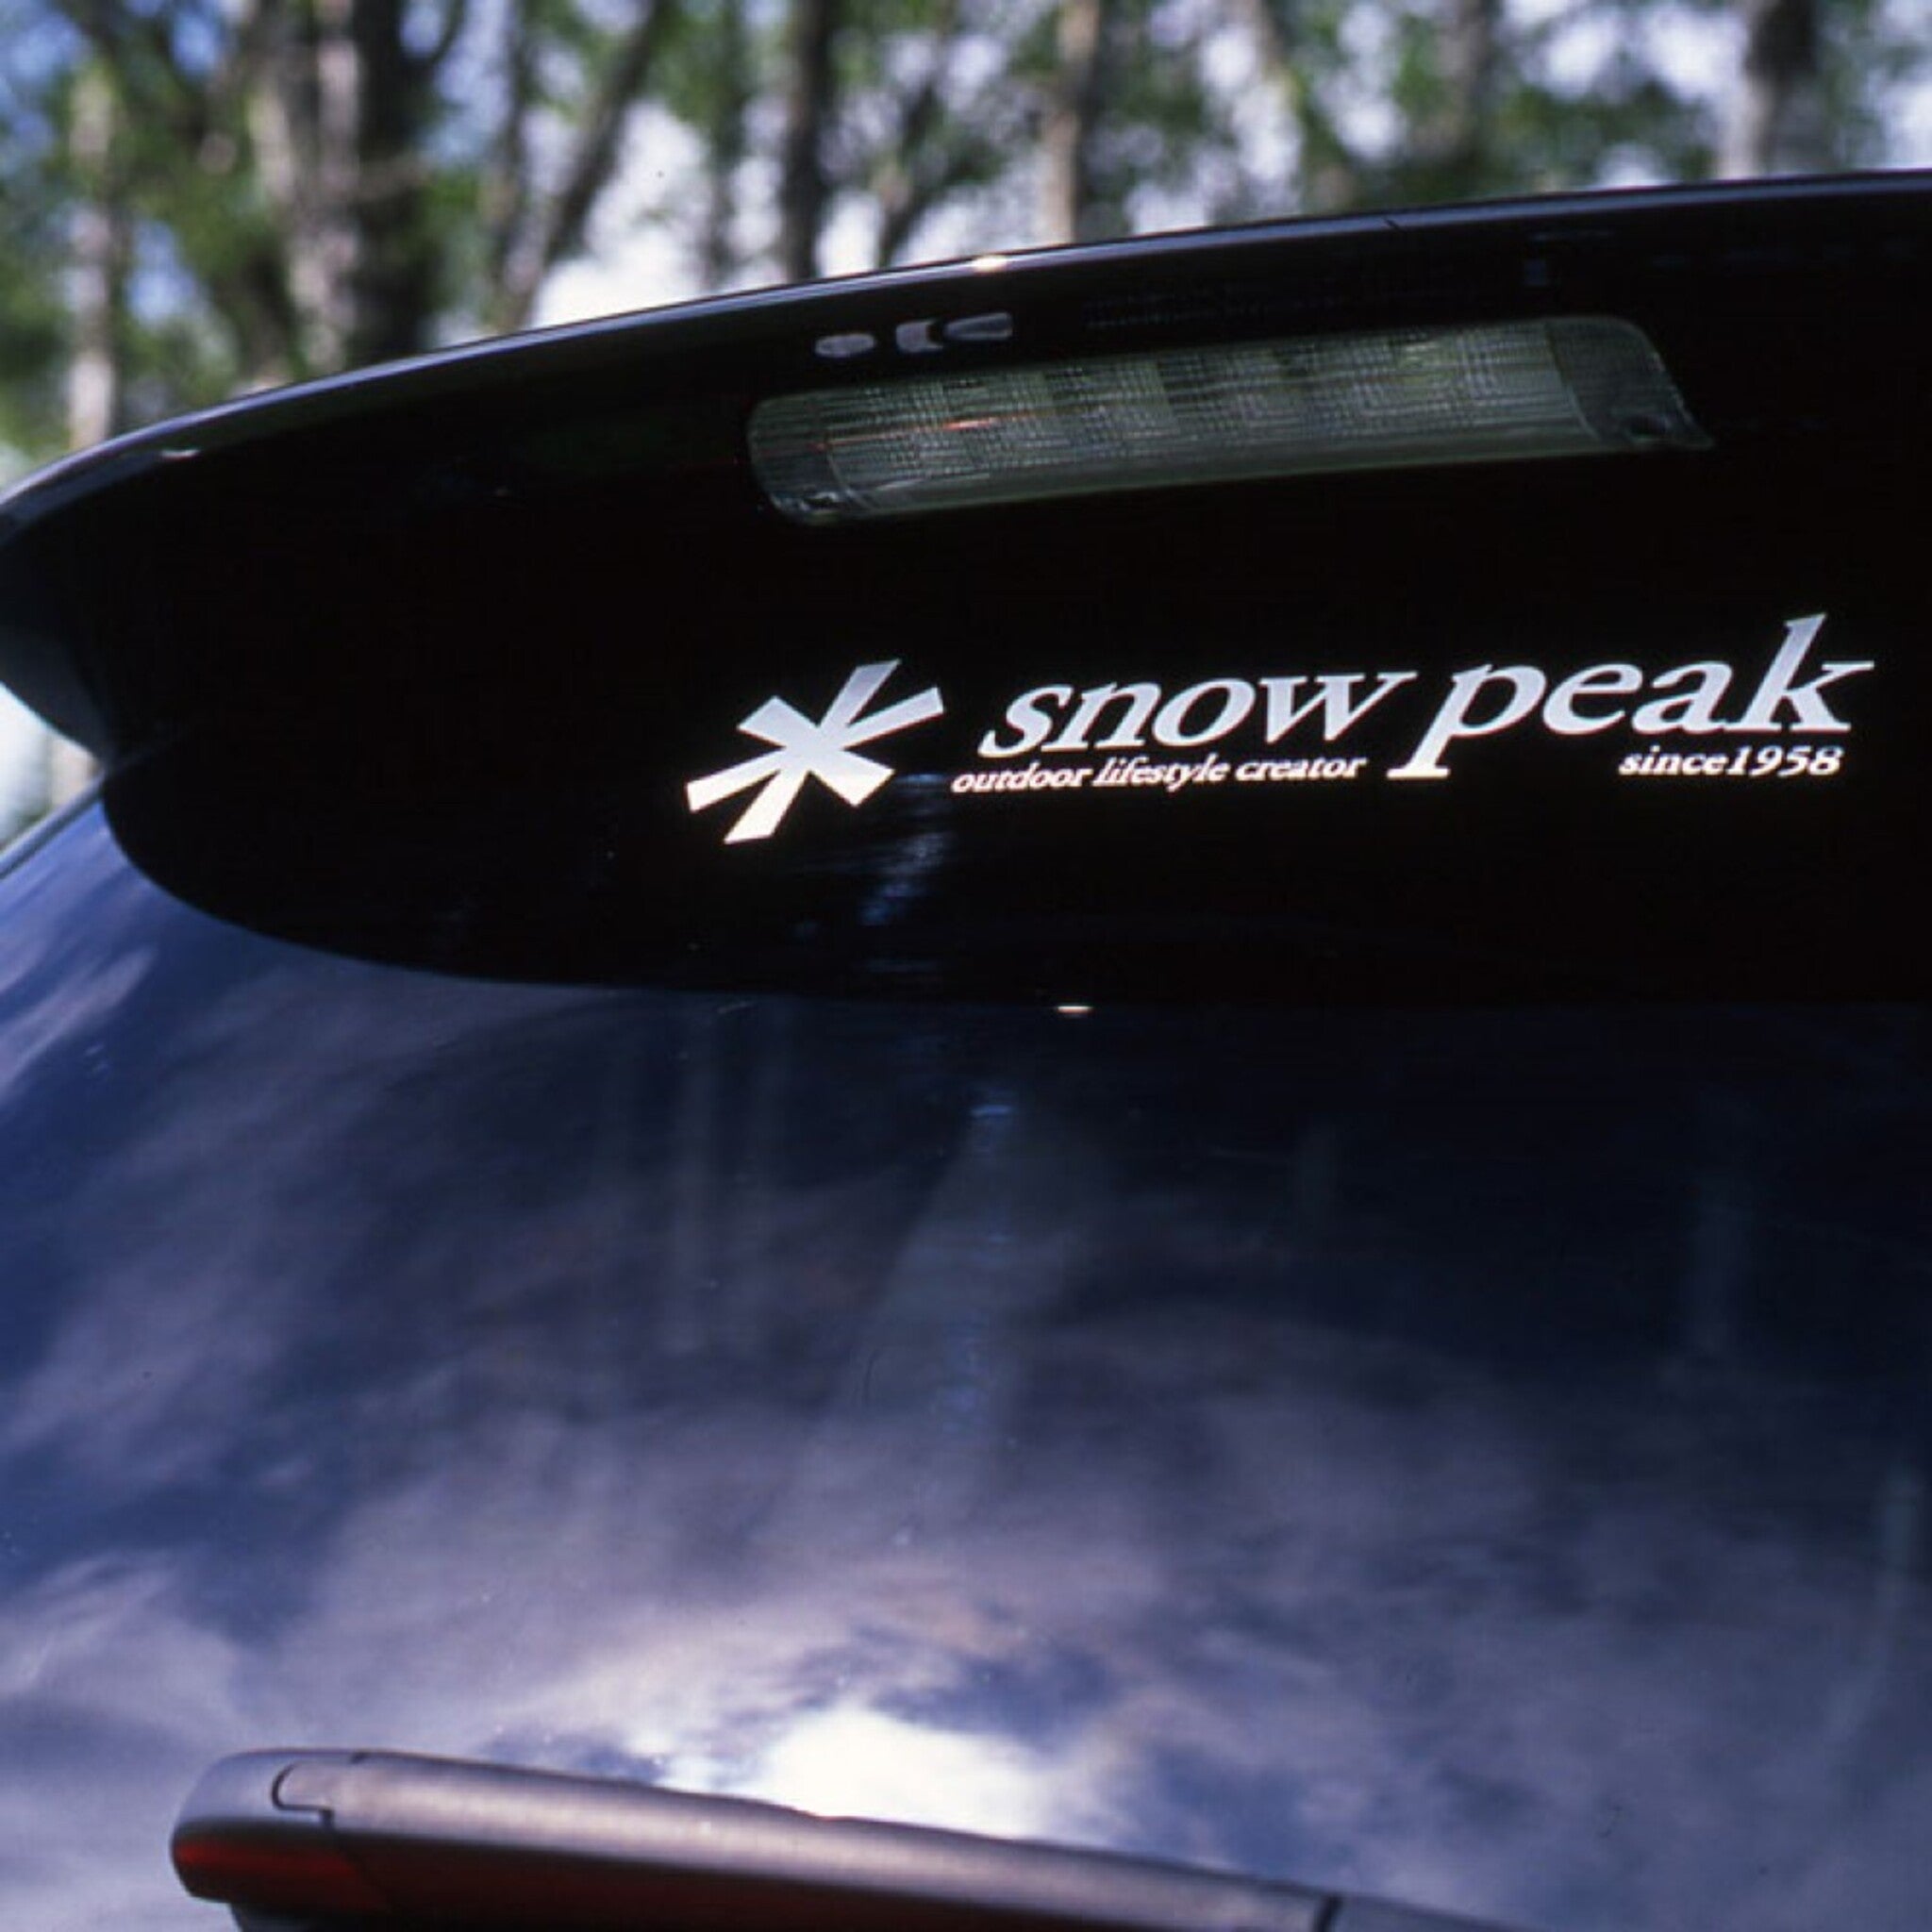 SnowPeak 汽車貼紙 小 NV-006